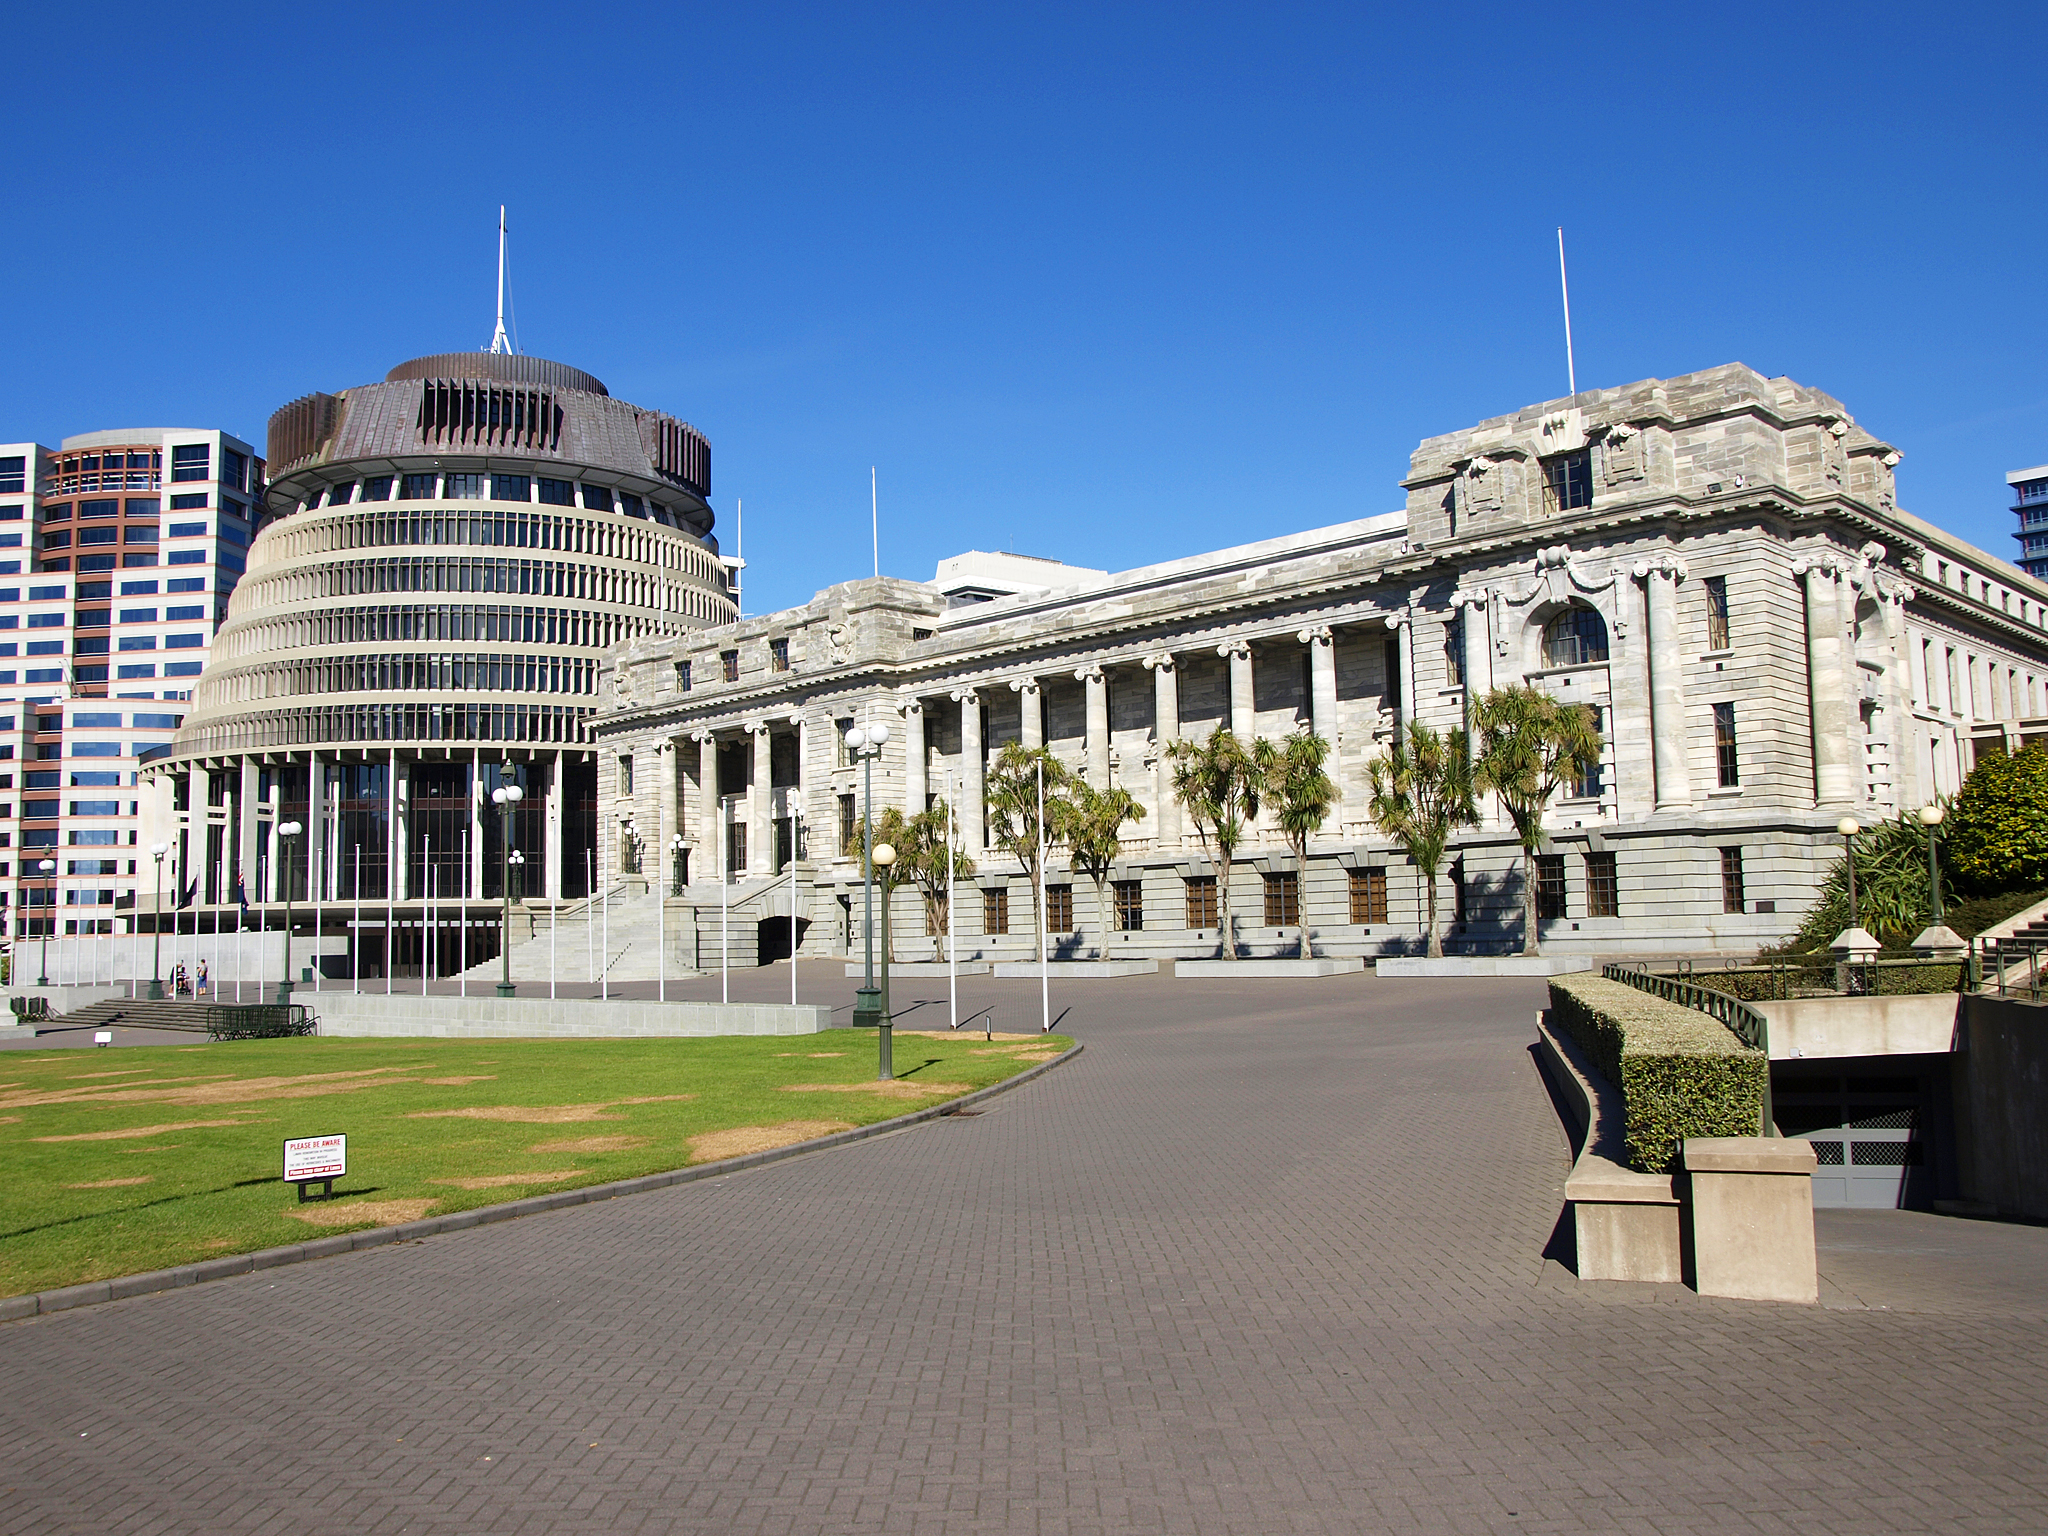 New Zealand gun restrictions pass parliament